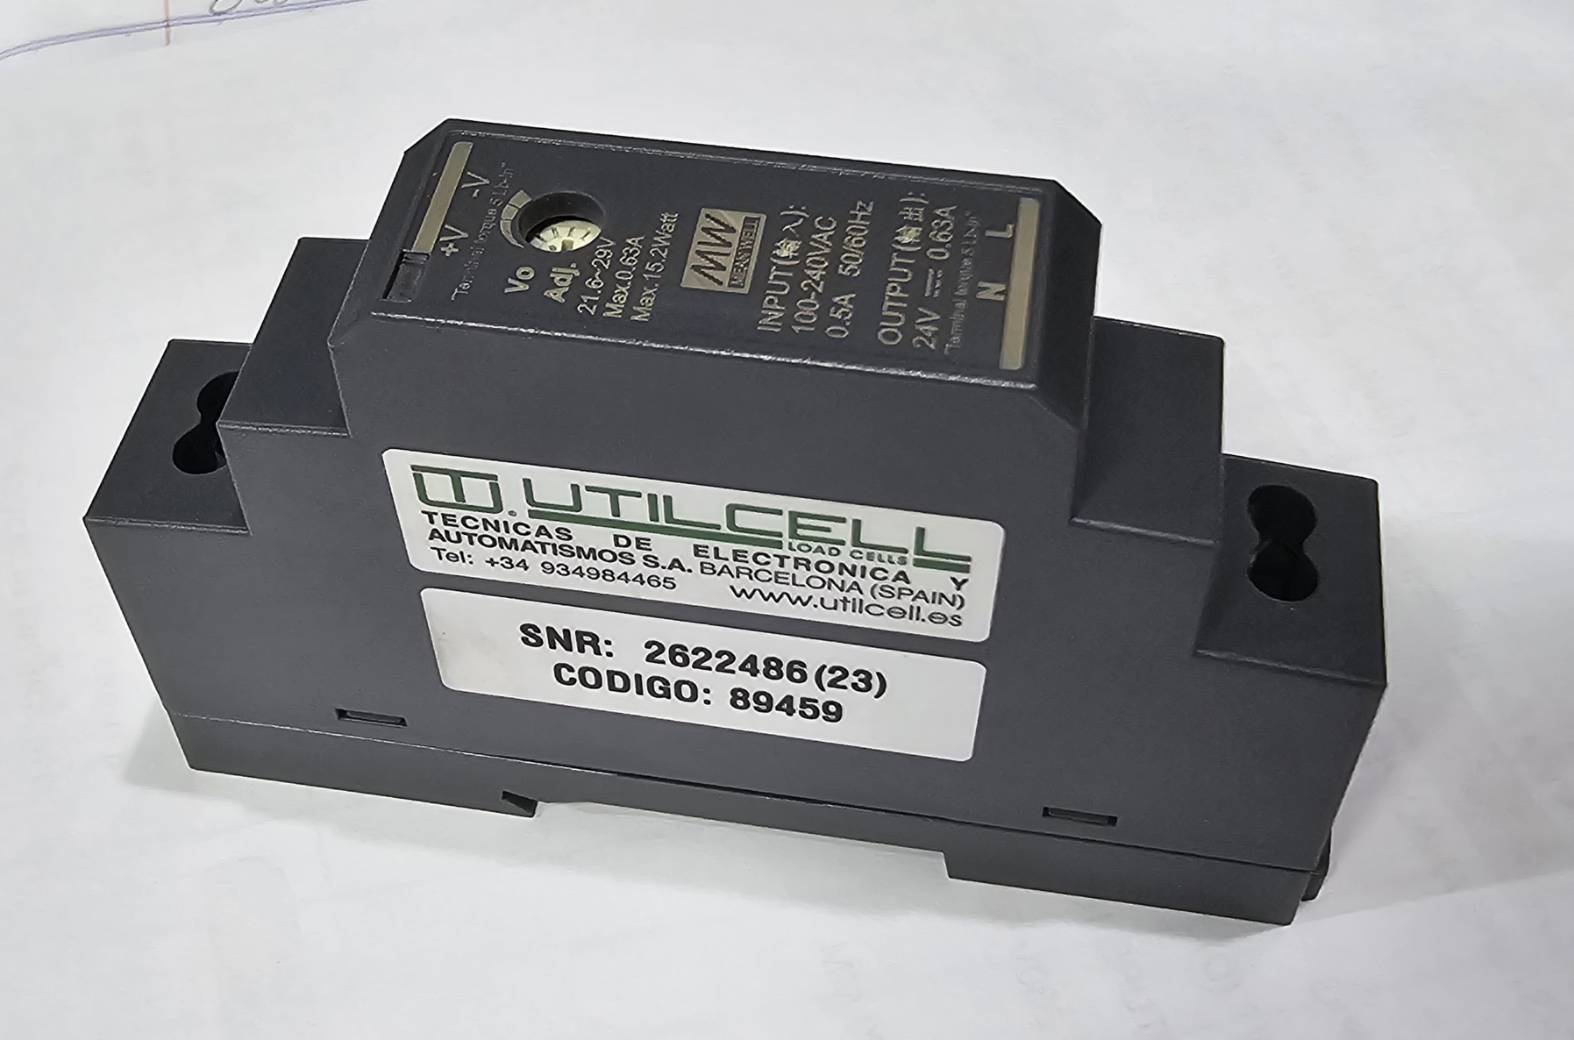 เซ็นเซอร์แปลงแรงดันไฟฟ้า (HDR-15-24 DIN Rail power supply) ยี่ห้อ Utilcell